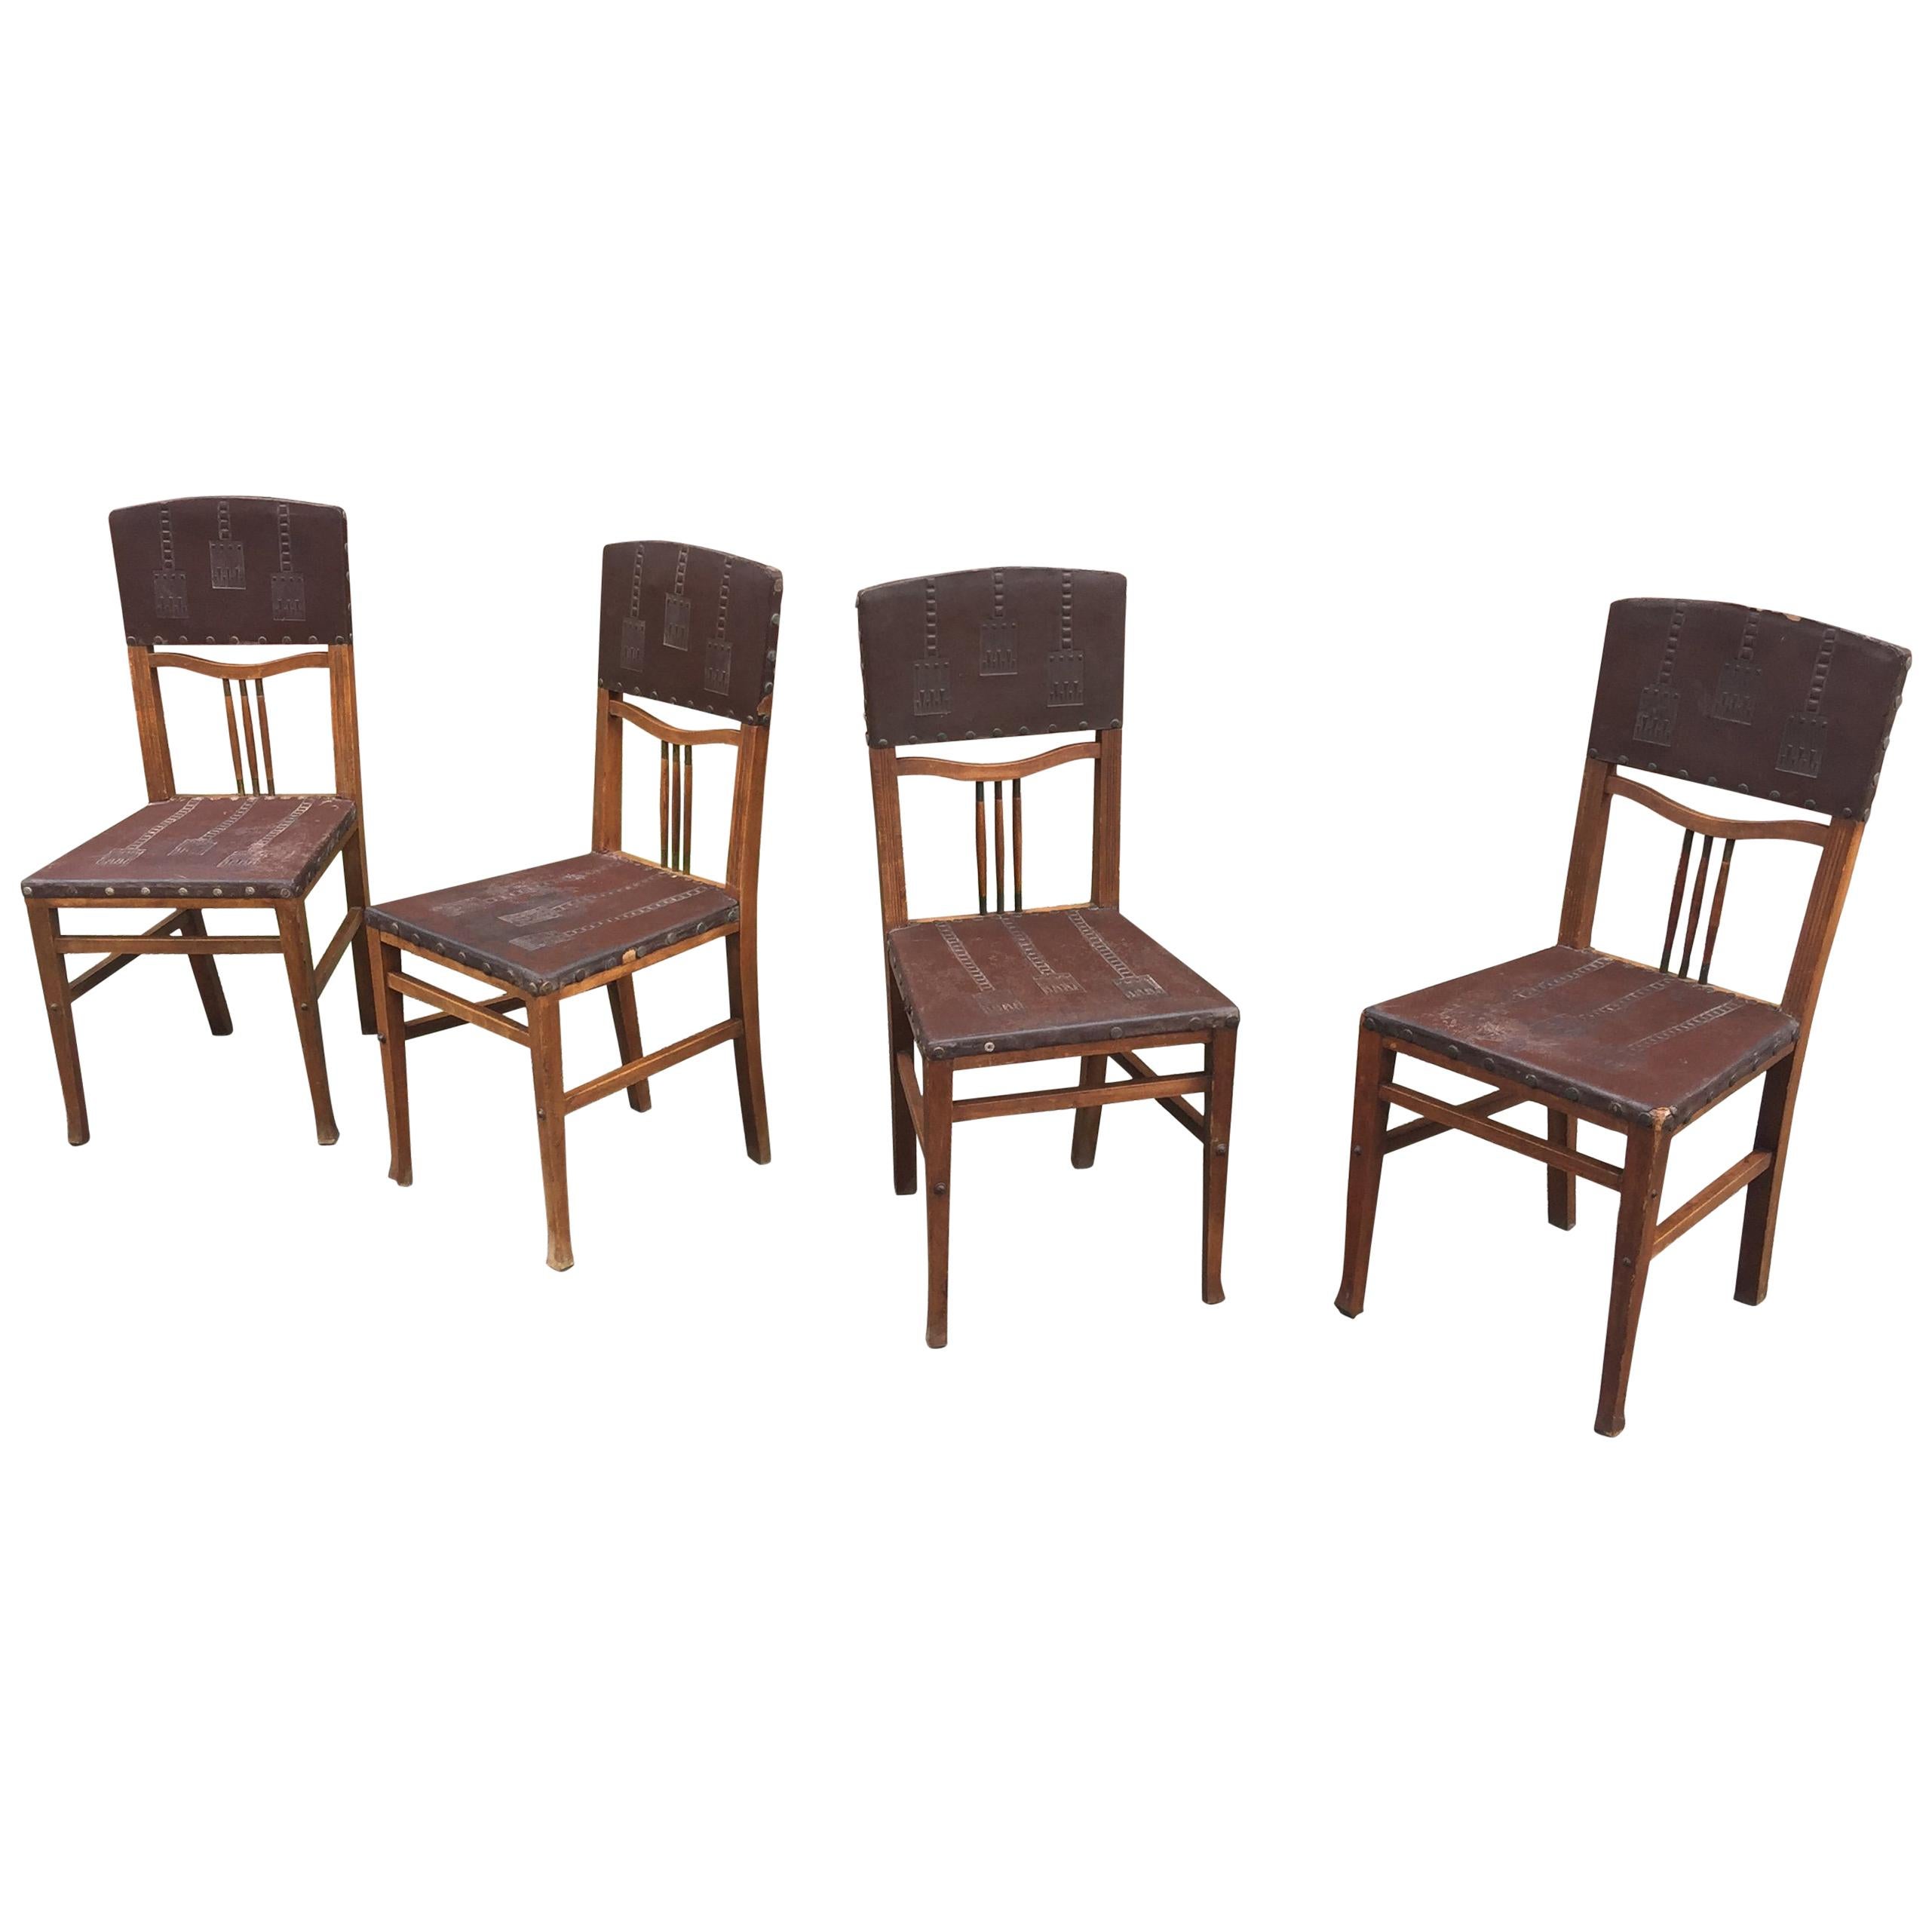 4 Stühle im Art nouveau-Stil der Wiener Secession, um 1900